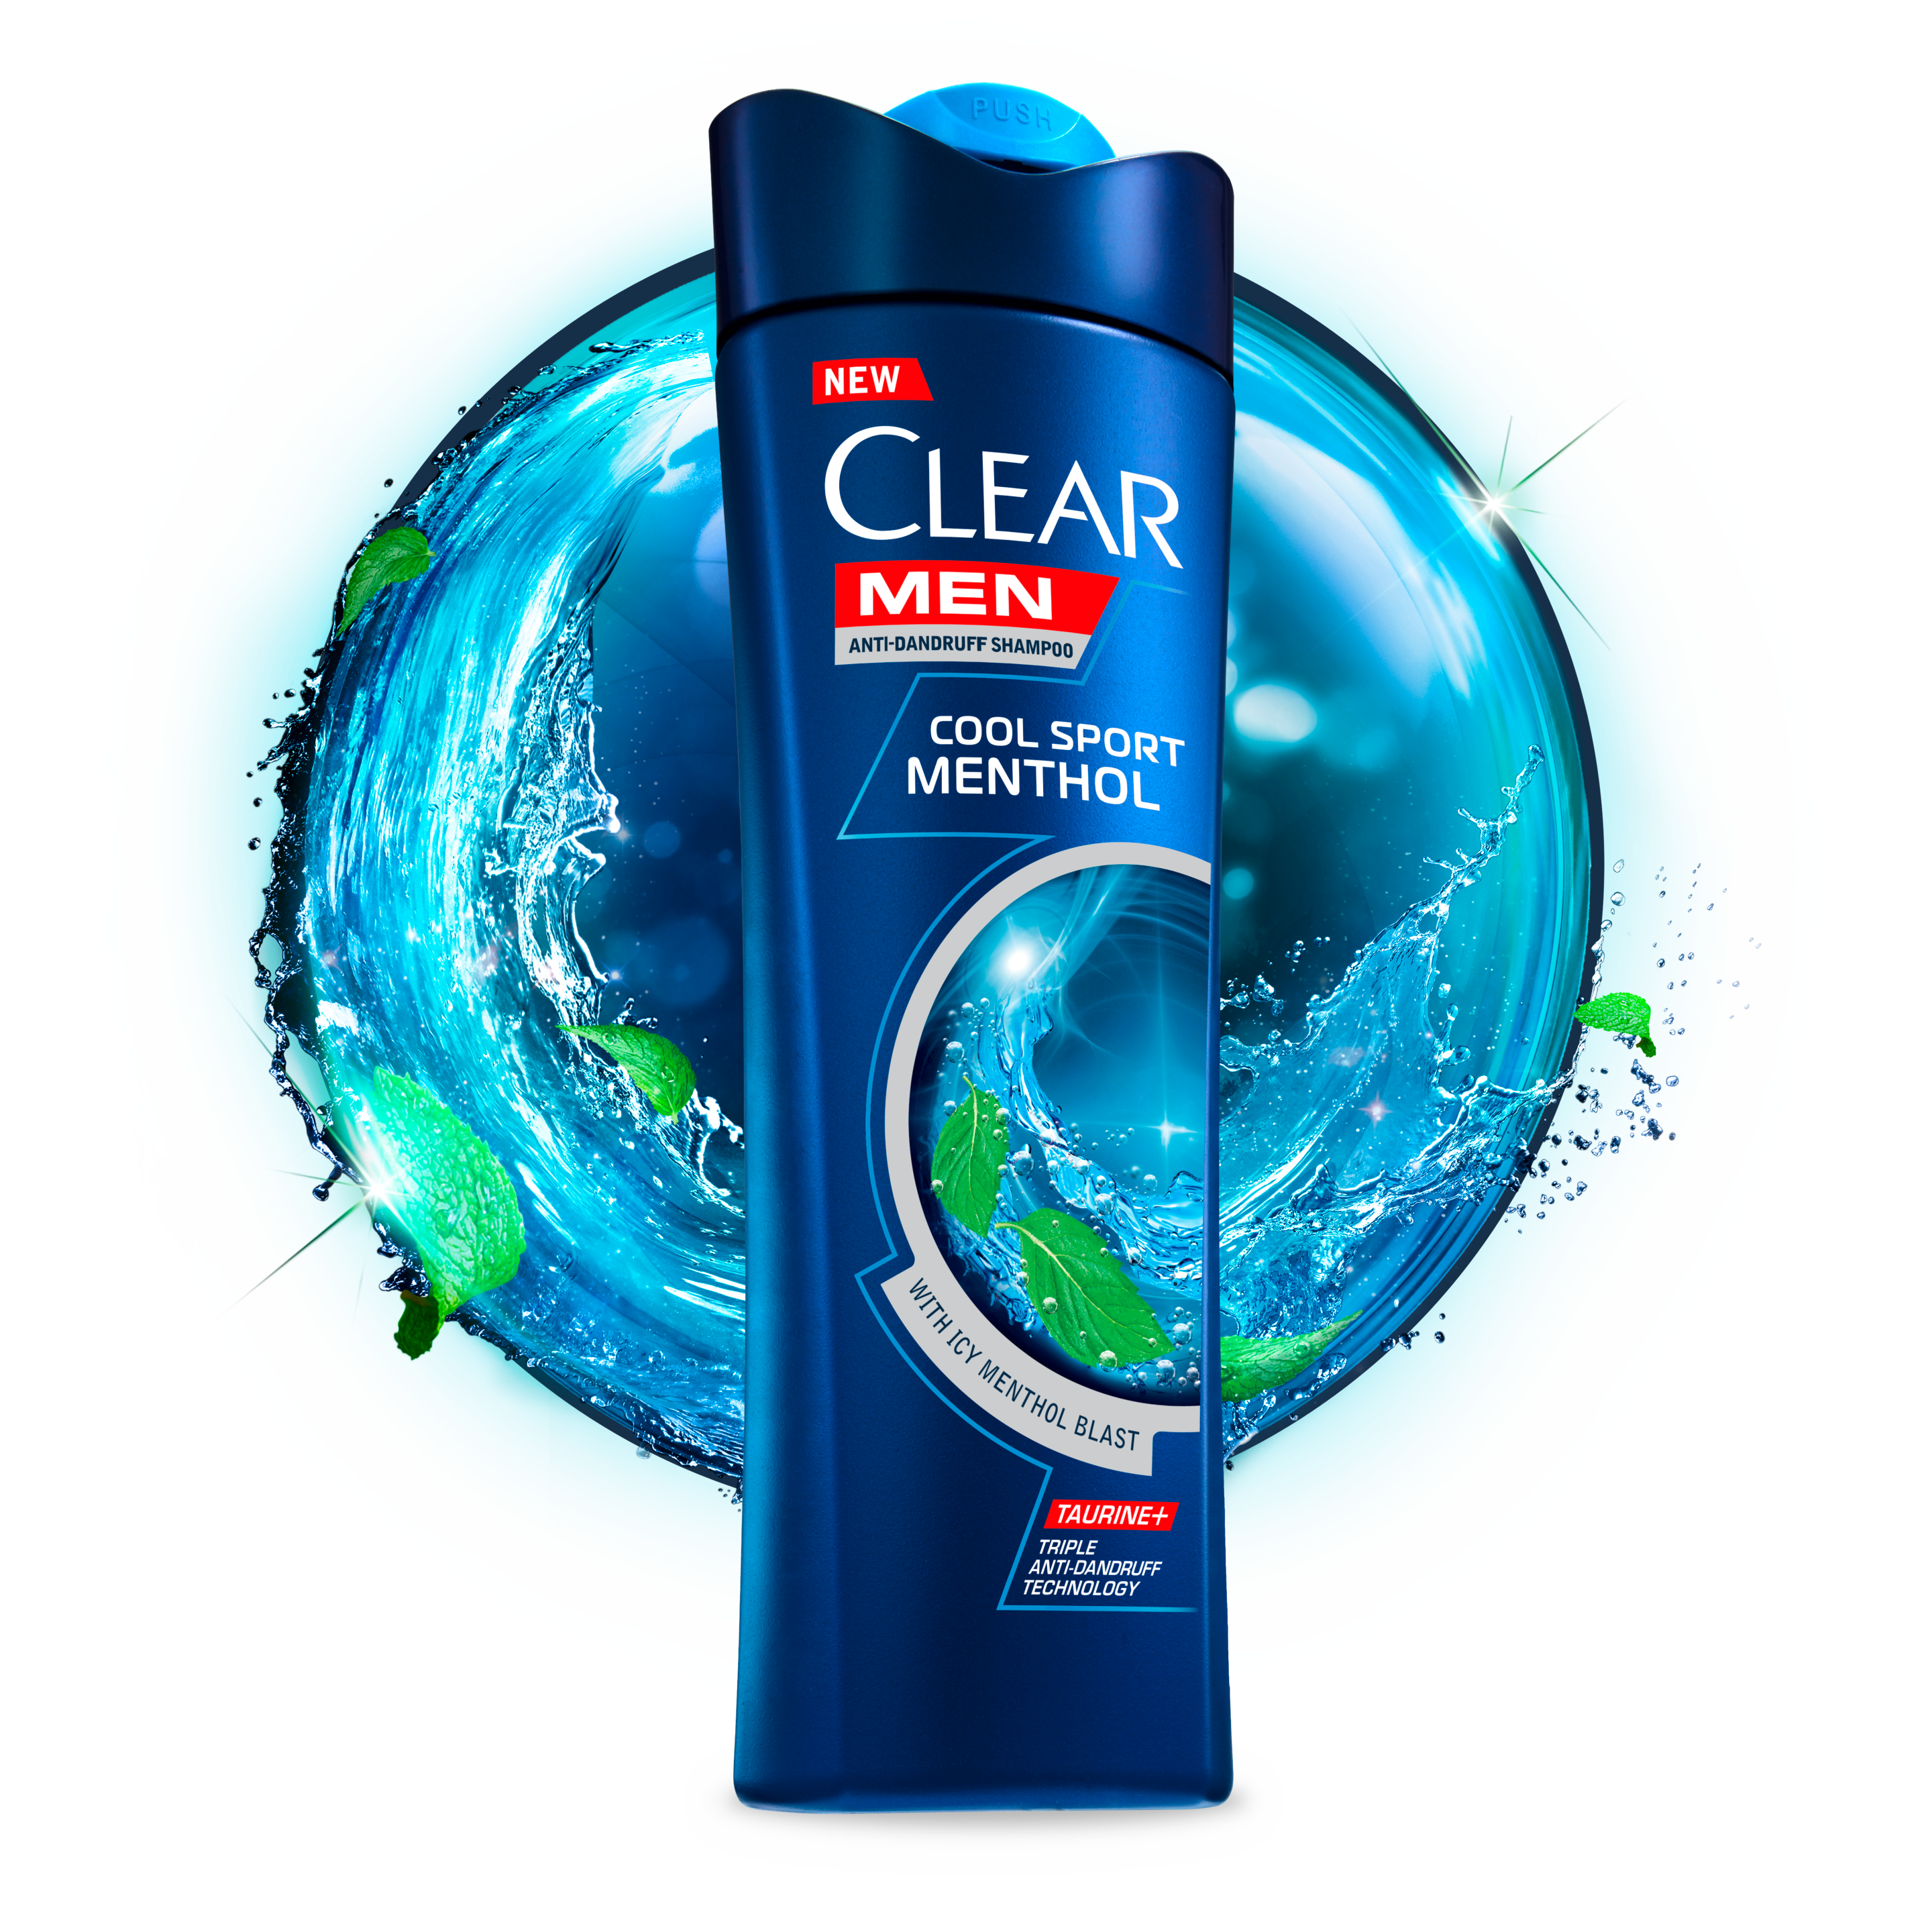 CLEAR Men Cool Sport Menthol Anti-dandruff Shampoo Text